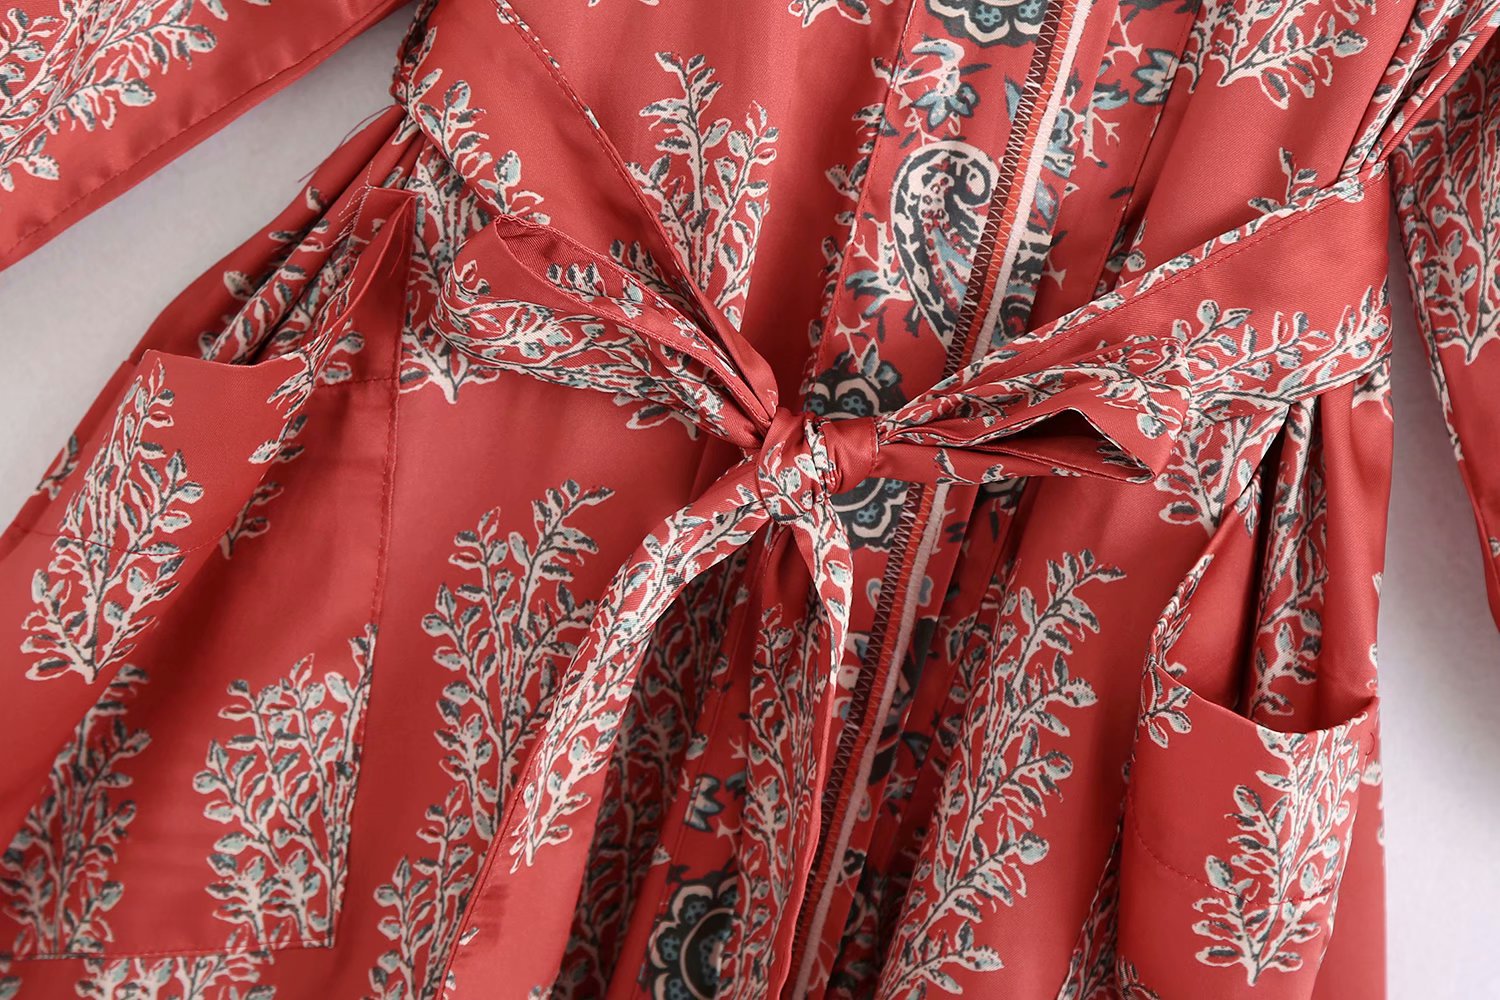 Kammy Long Kimono